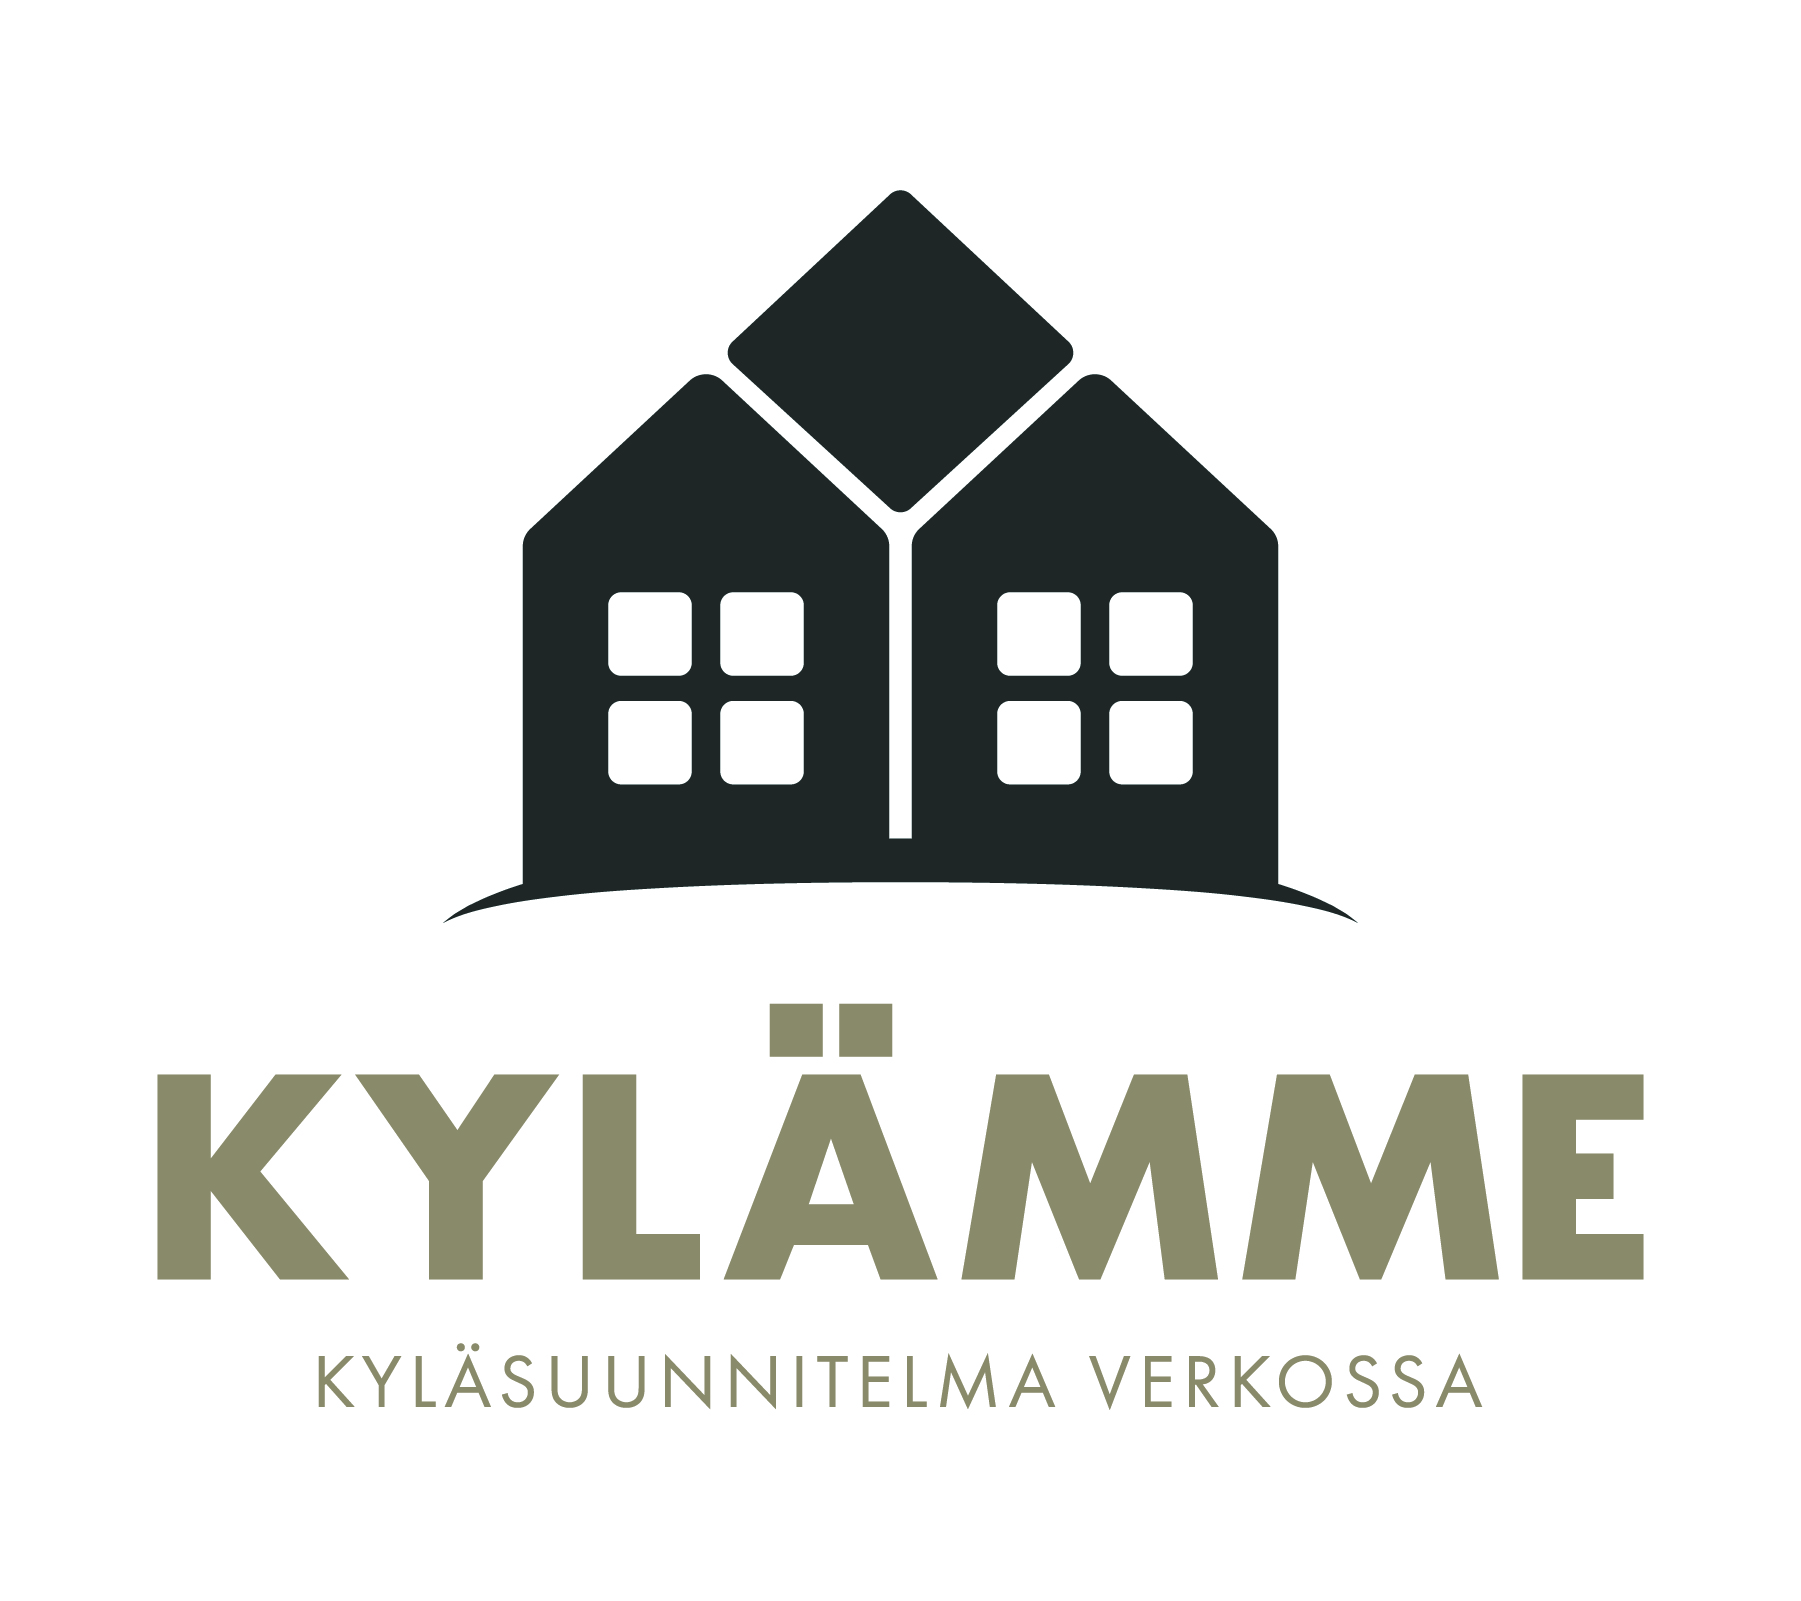 Keski-Suomen Kylät ry